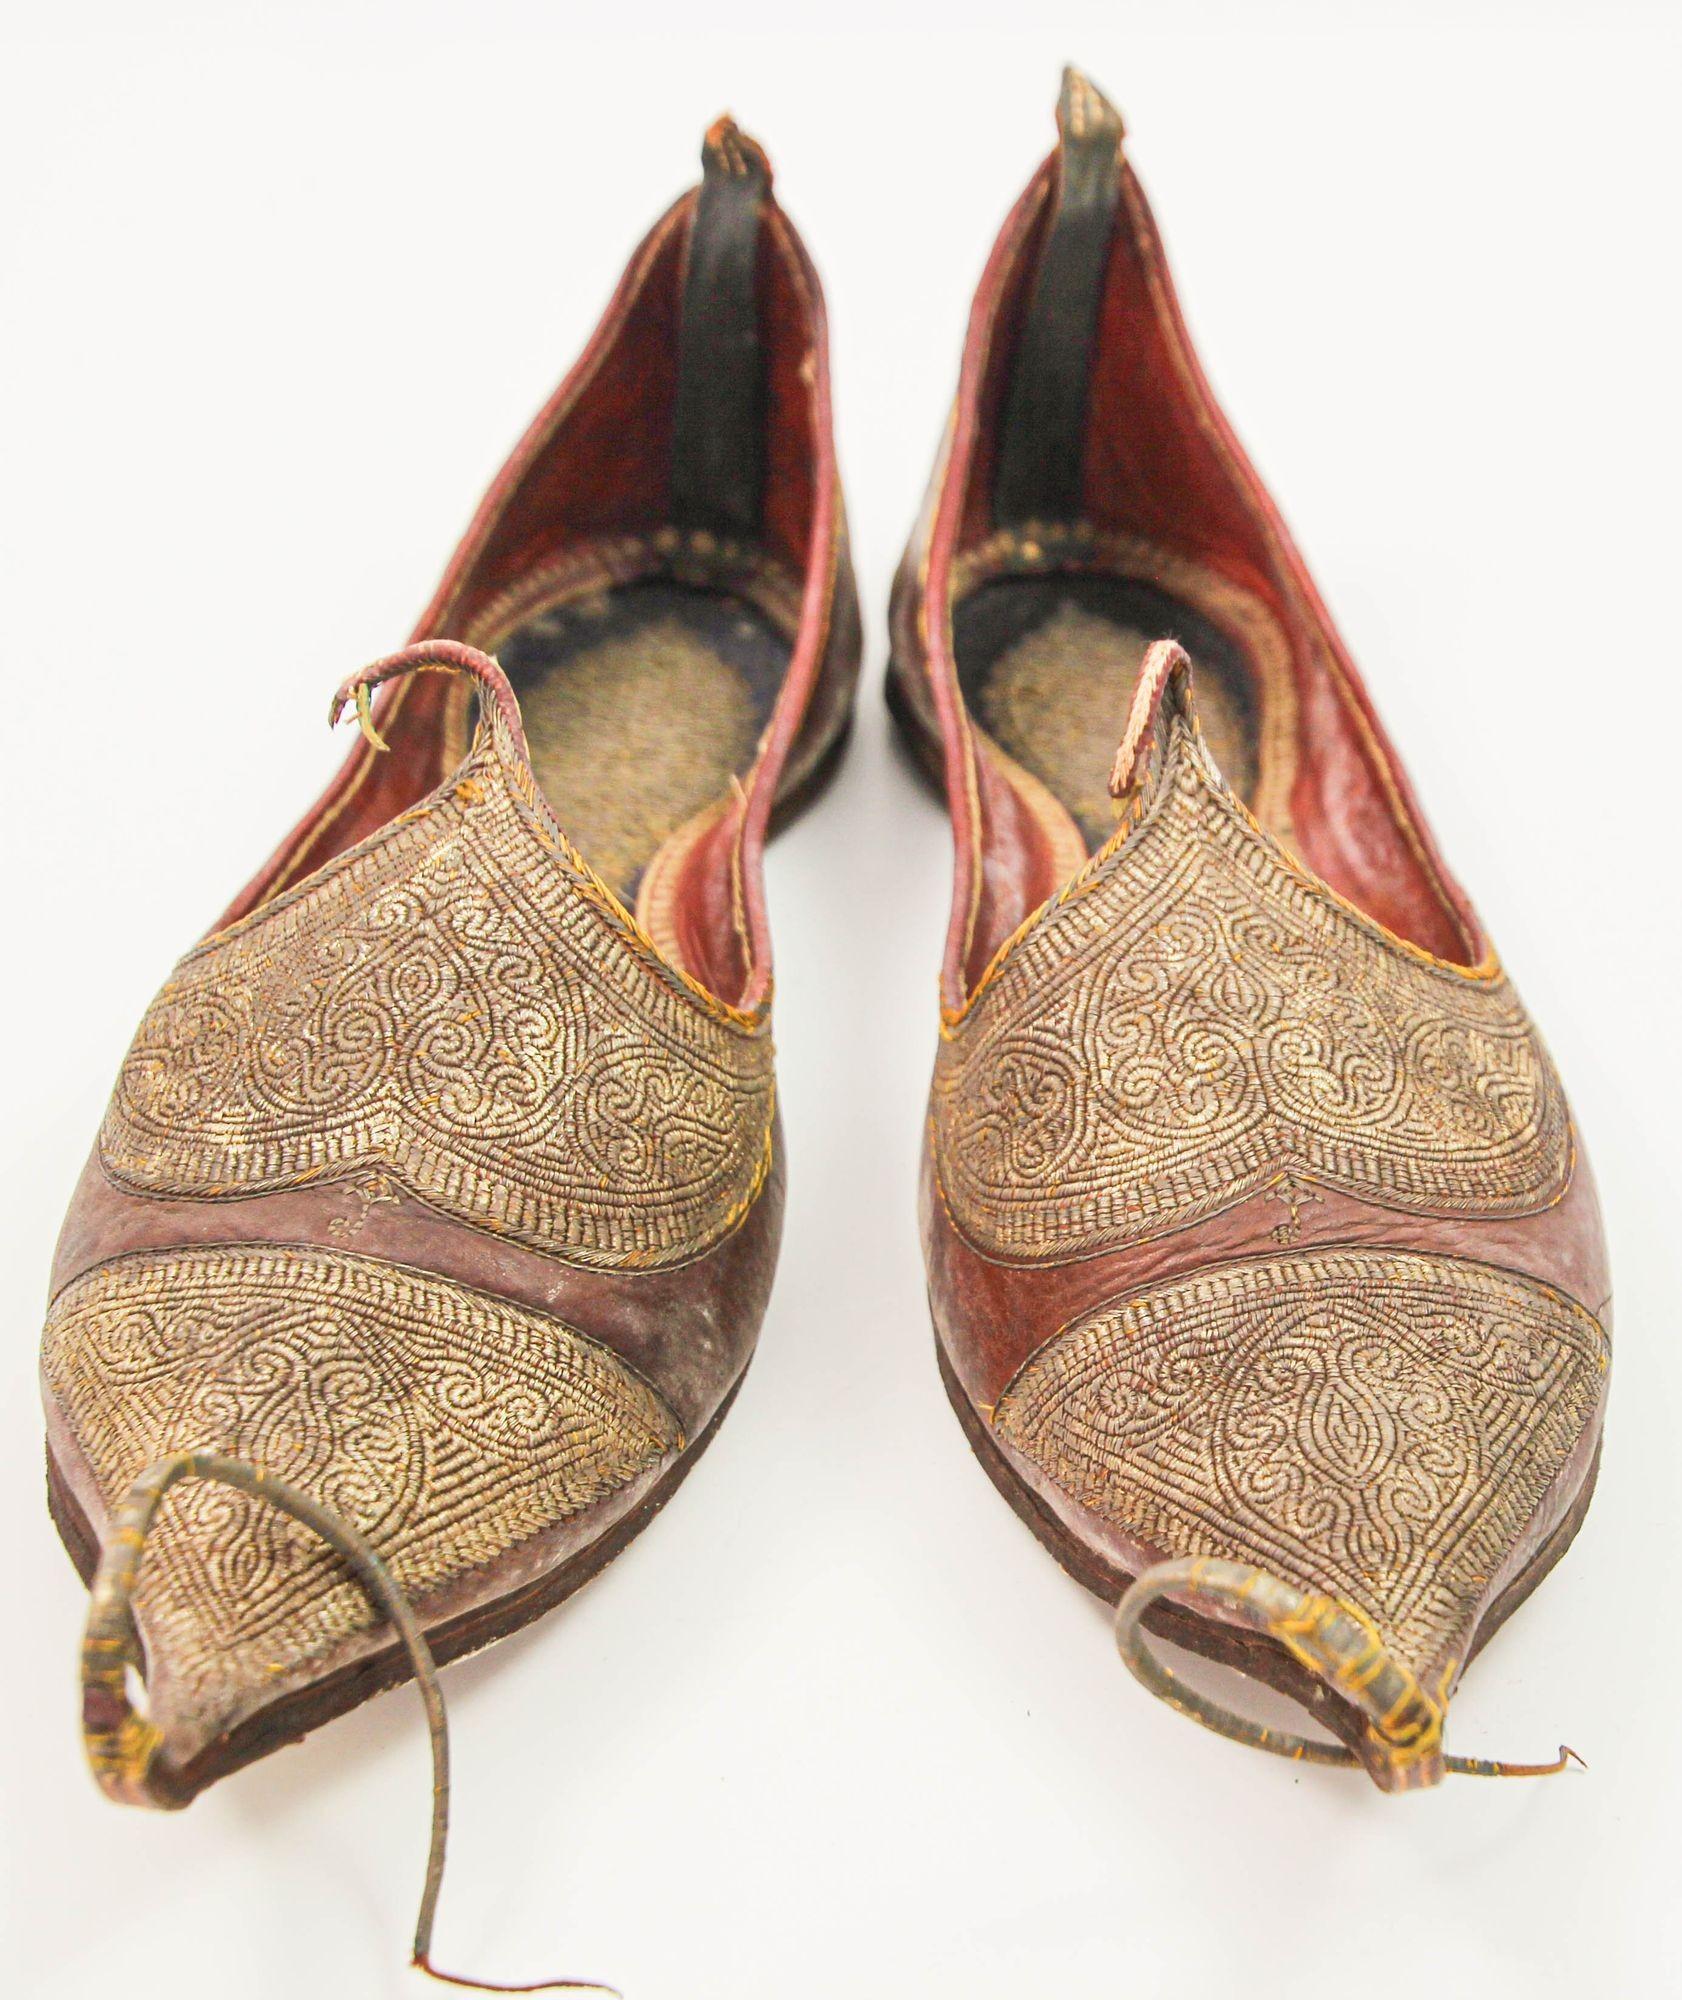 Chaussures anciennes en cuir moghol mauresque turc ottoman avec broderie d'or.
Une paire de rares chaussures en cuir de la fin du 19e siècle, cousues et toilées à la main, brodées à la main avec des fils métalliques dorés.
Dimensions : 11